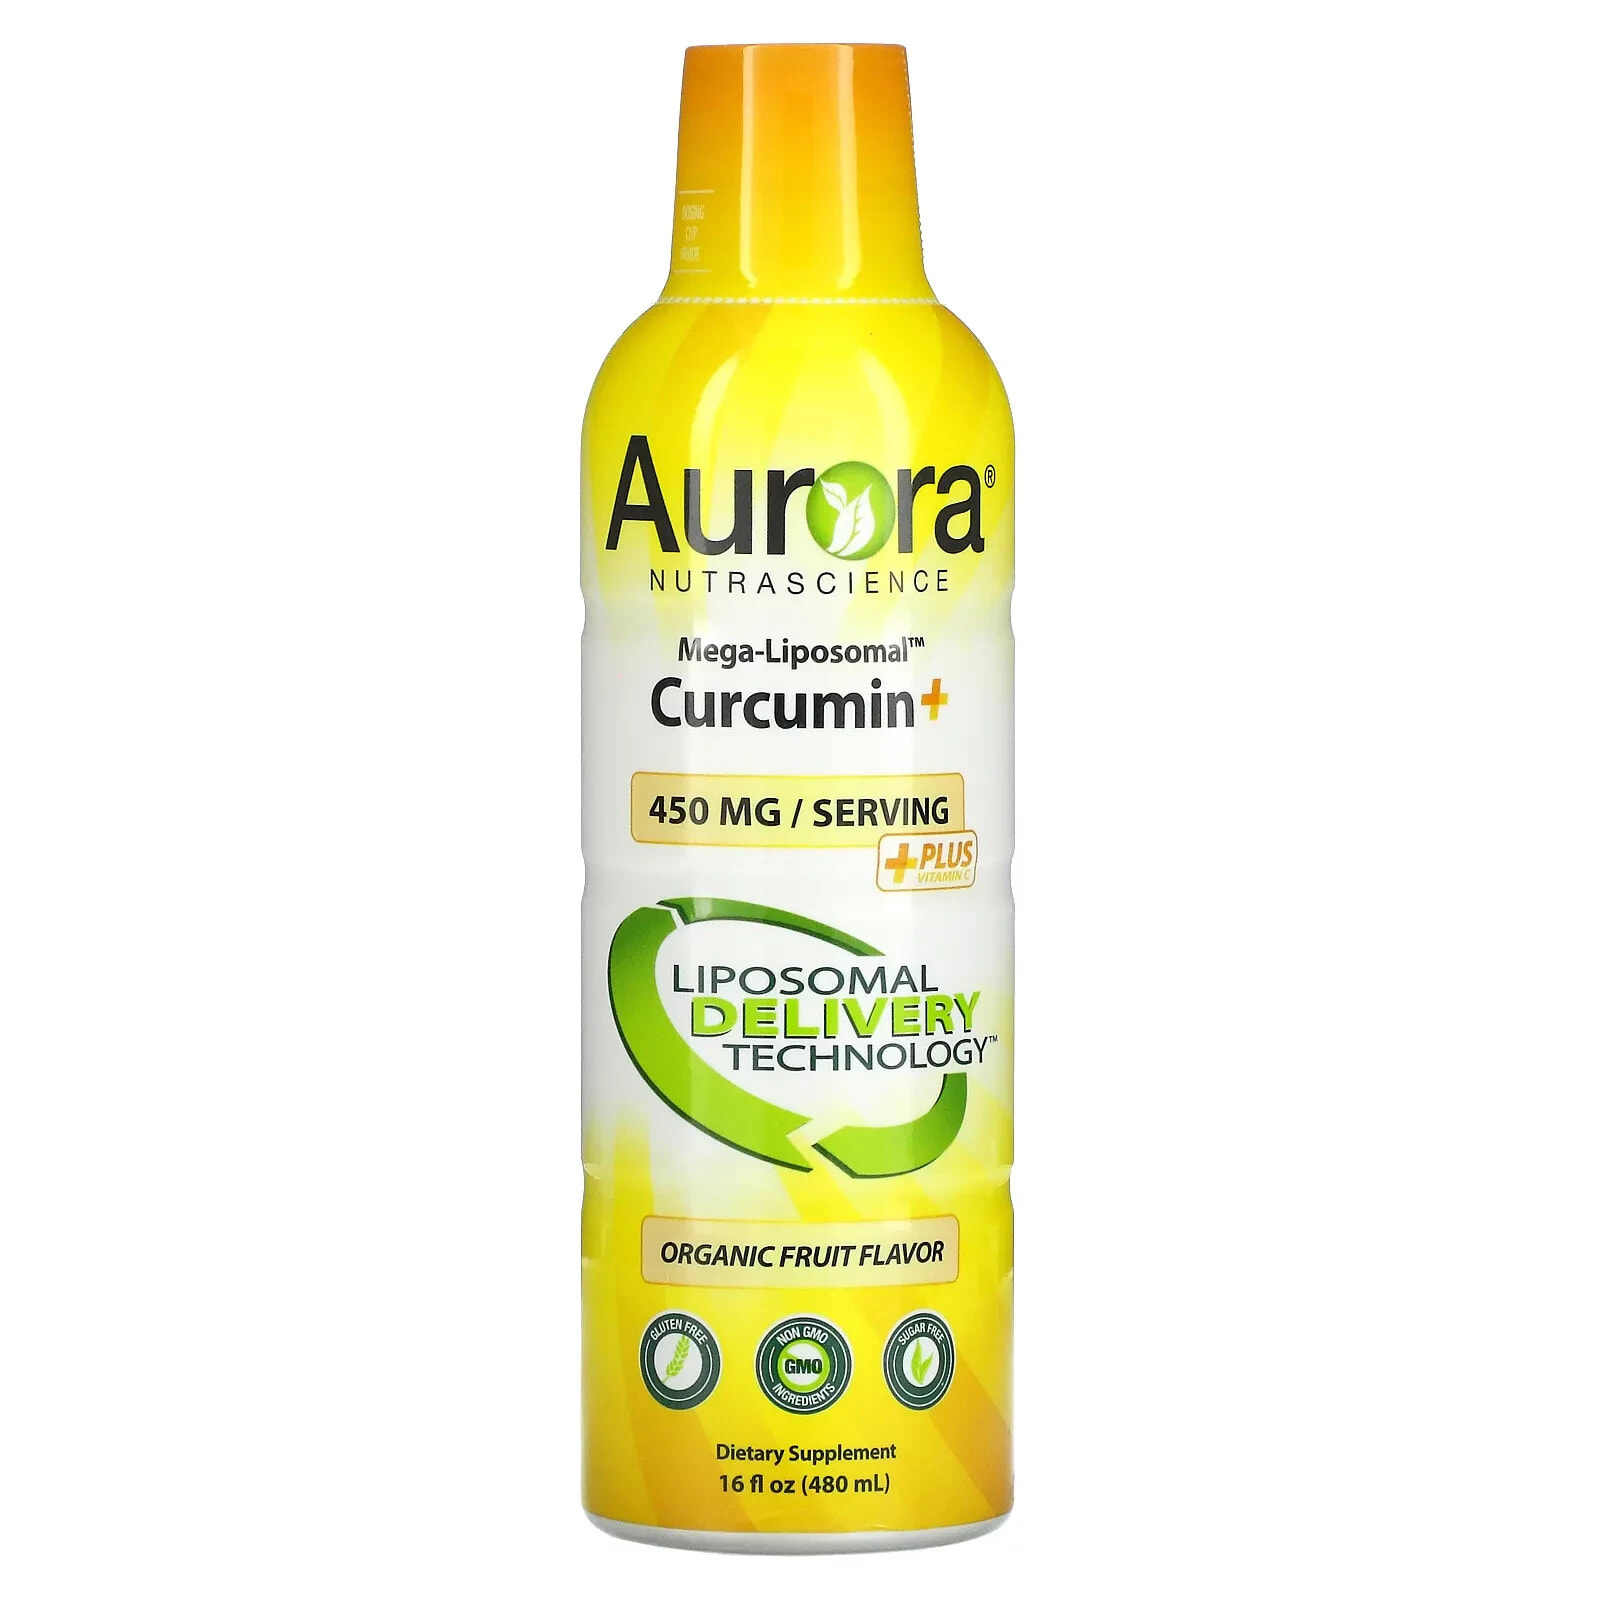 Аурора Нутрасаенс, Mega-Liposomal Curcumin+, мега липосомальный куркумин, со вкусом органических фруктов, 600 мг, 480 мл (16 жидк. унций)